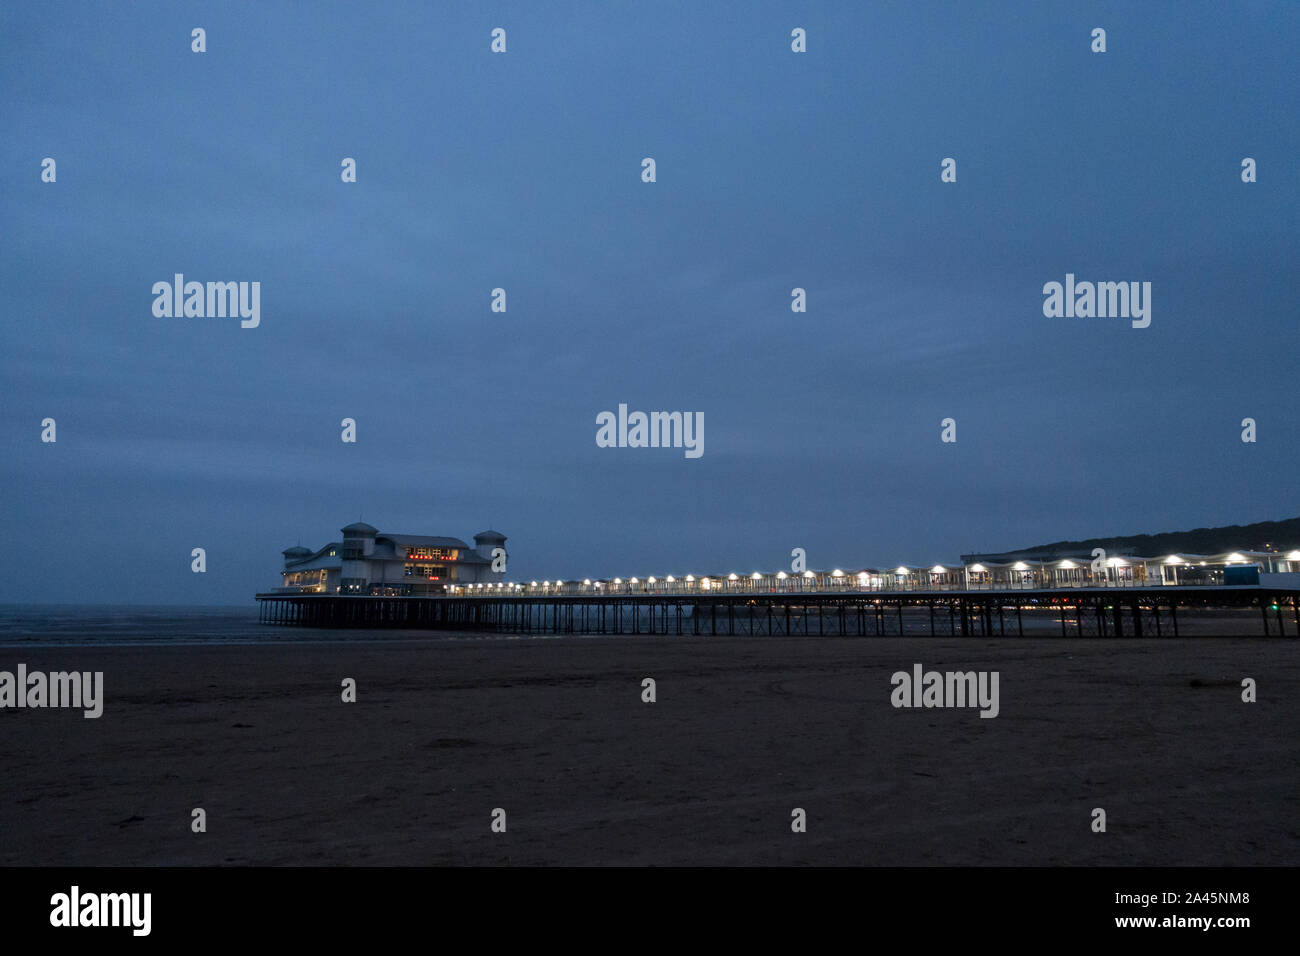 The Grand Pier, Weston-Super-Mare, UK. Stock Photo